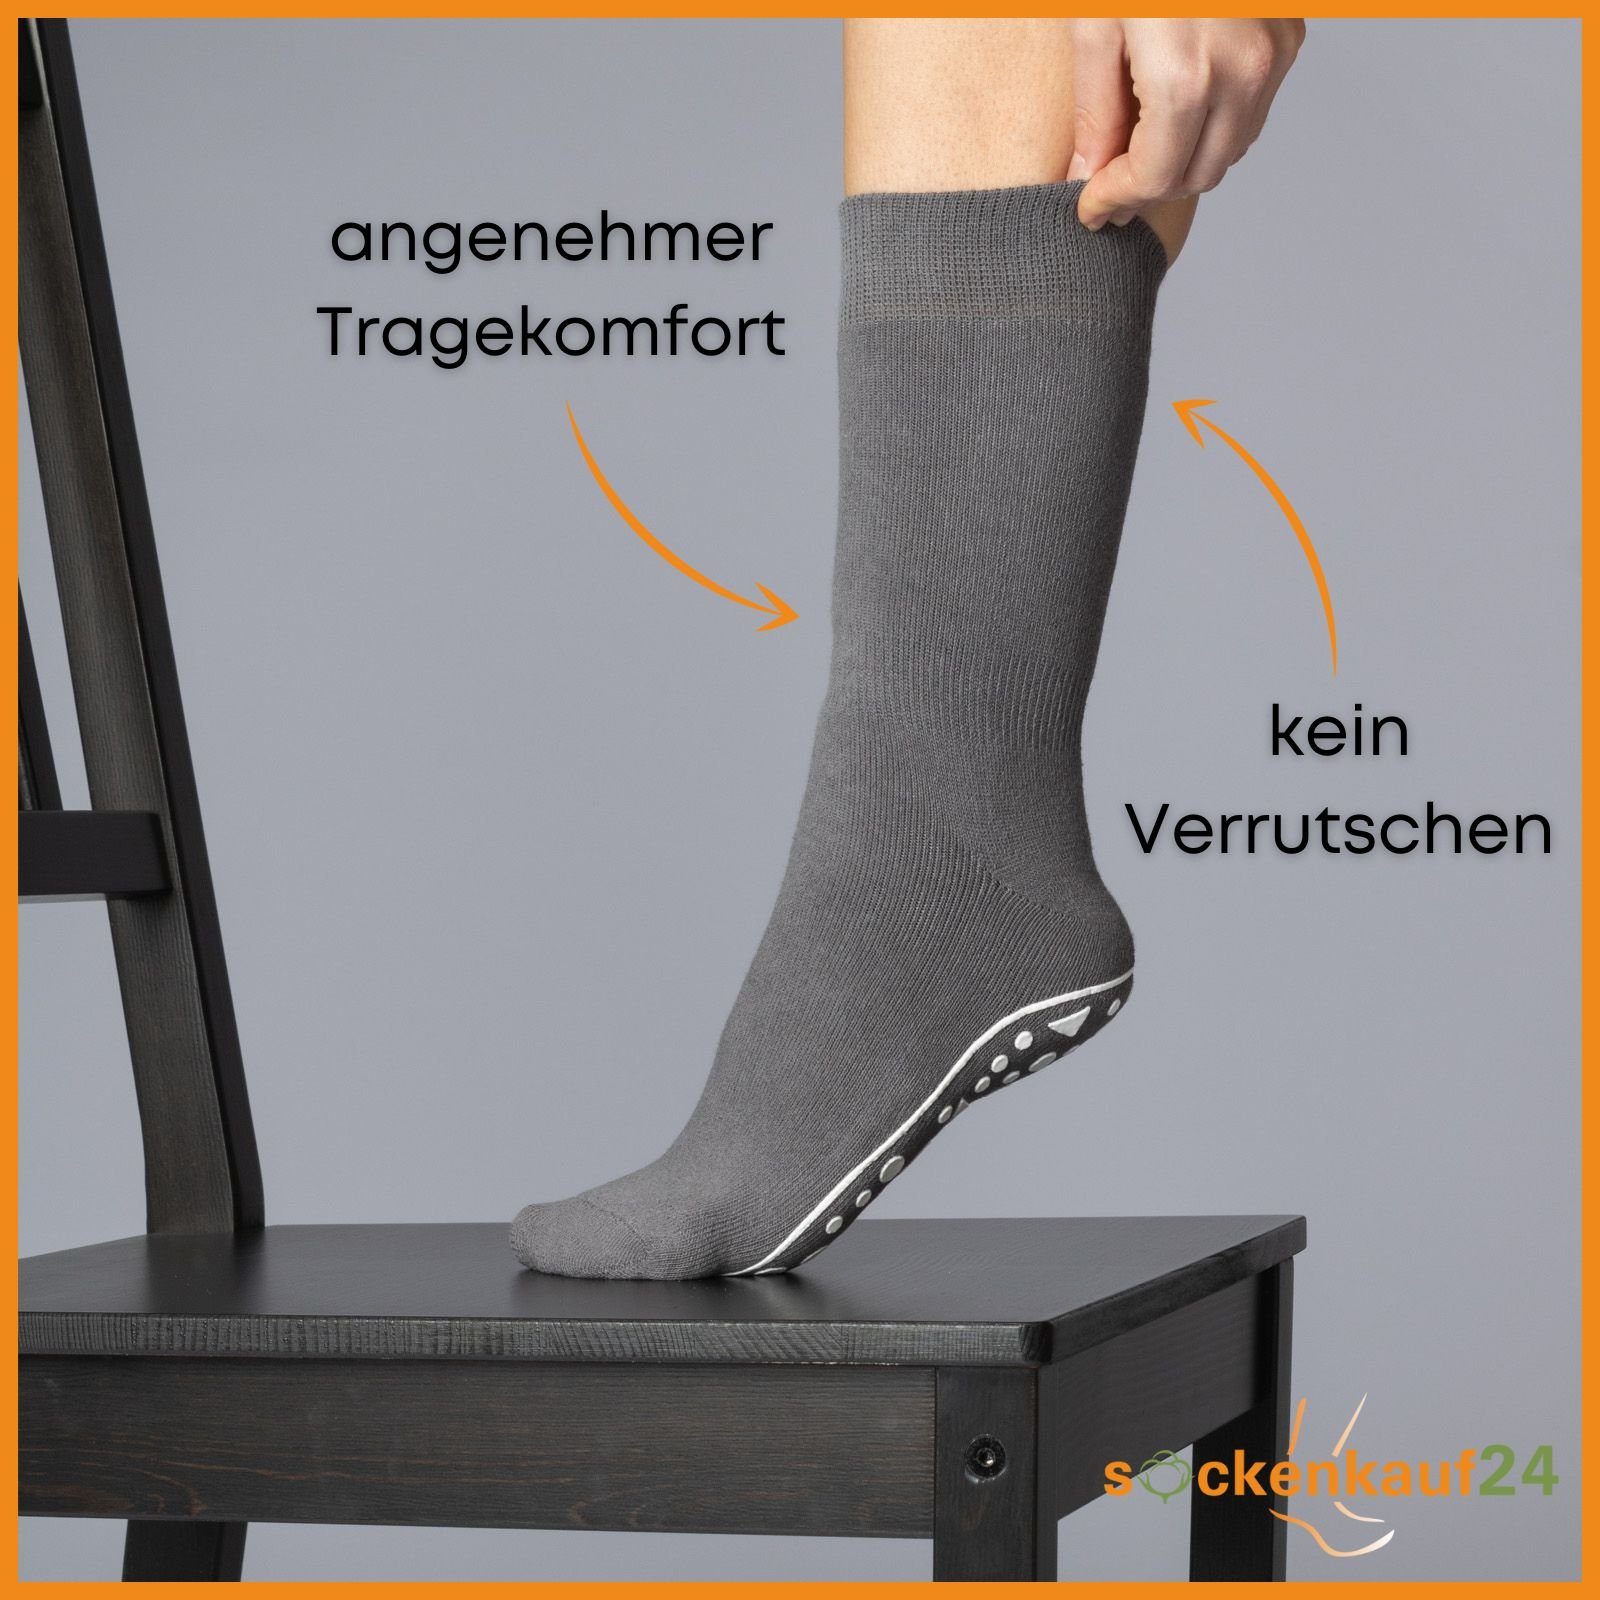 21395 4, (Schwarz, Herren Damen Stoppersocken Socken WP 2, Paar & Blau, Baumwolle sockenkauf24 Anti Grau, 2-Paar, 6 Rutsch - Noppensocken ABS-Socken 47-50)